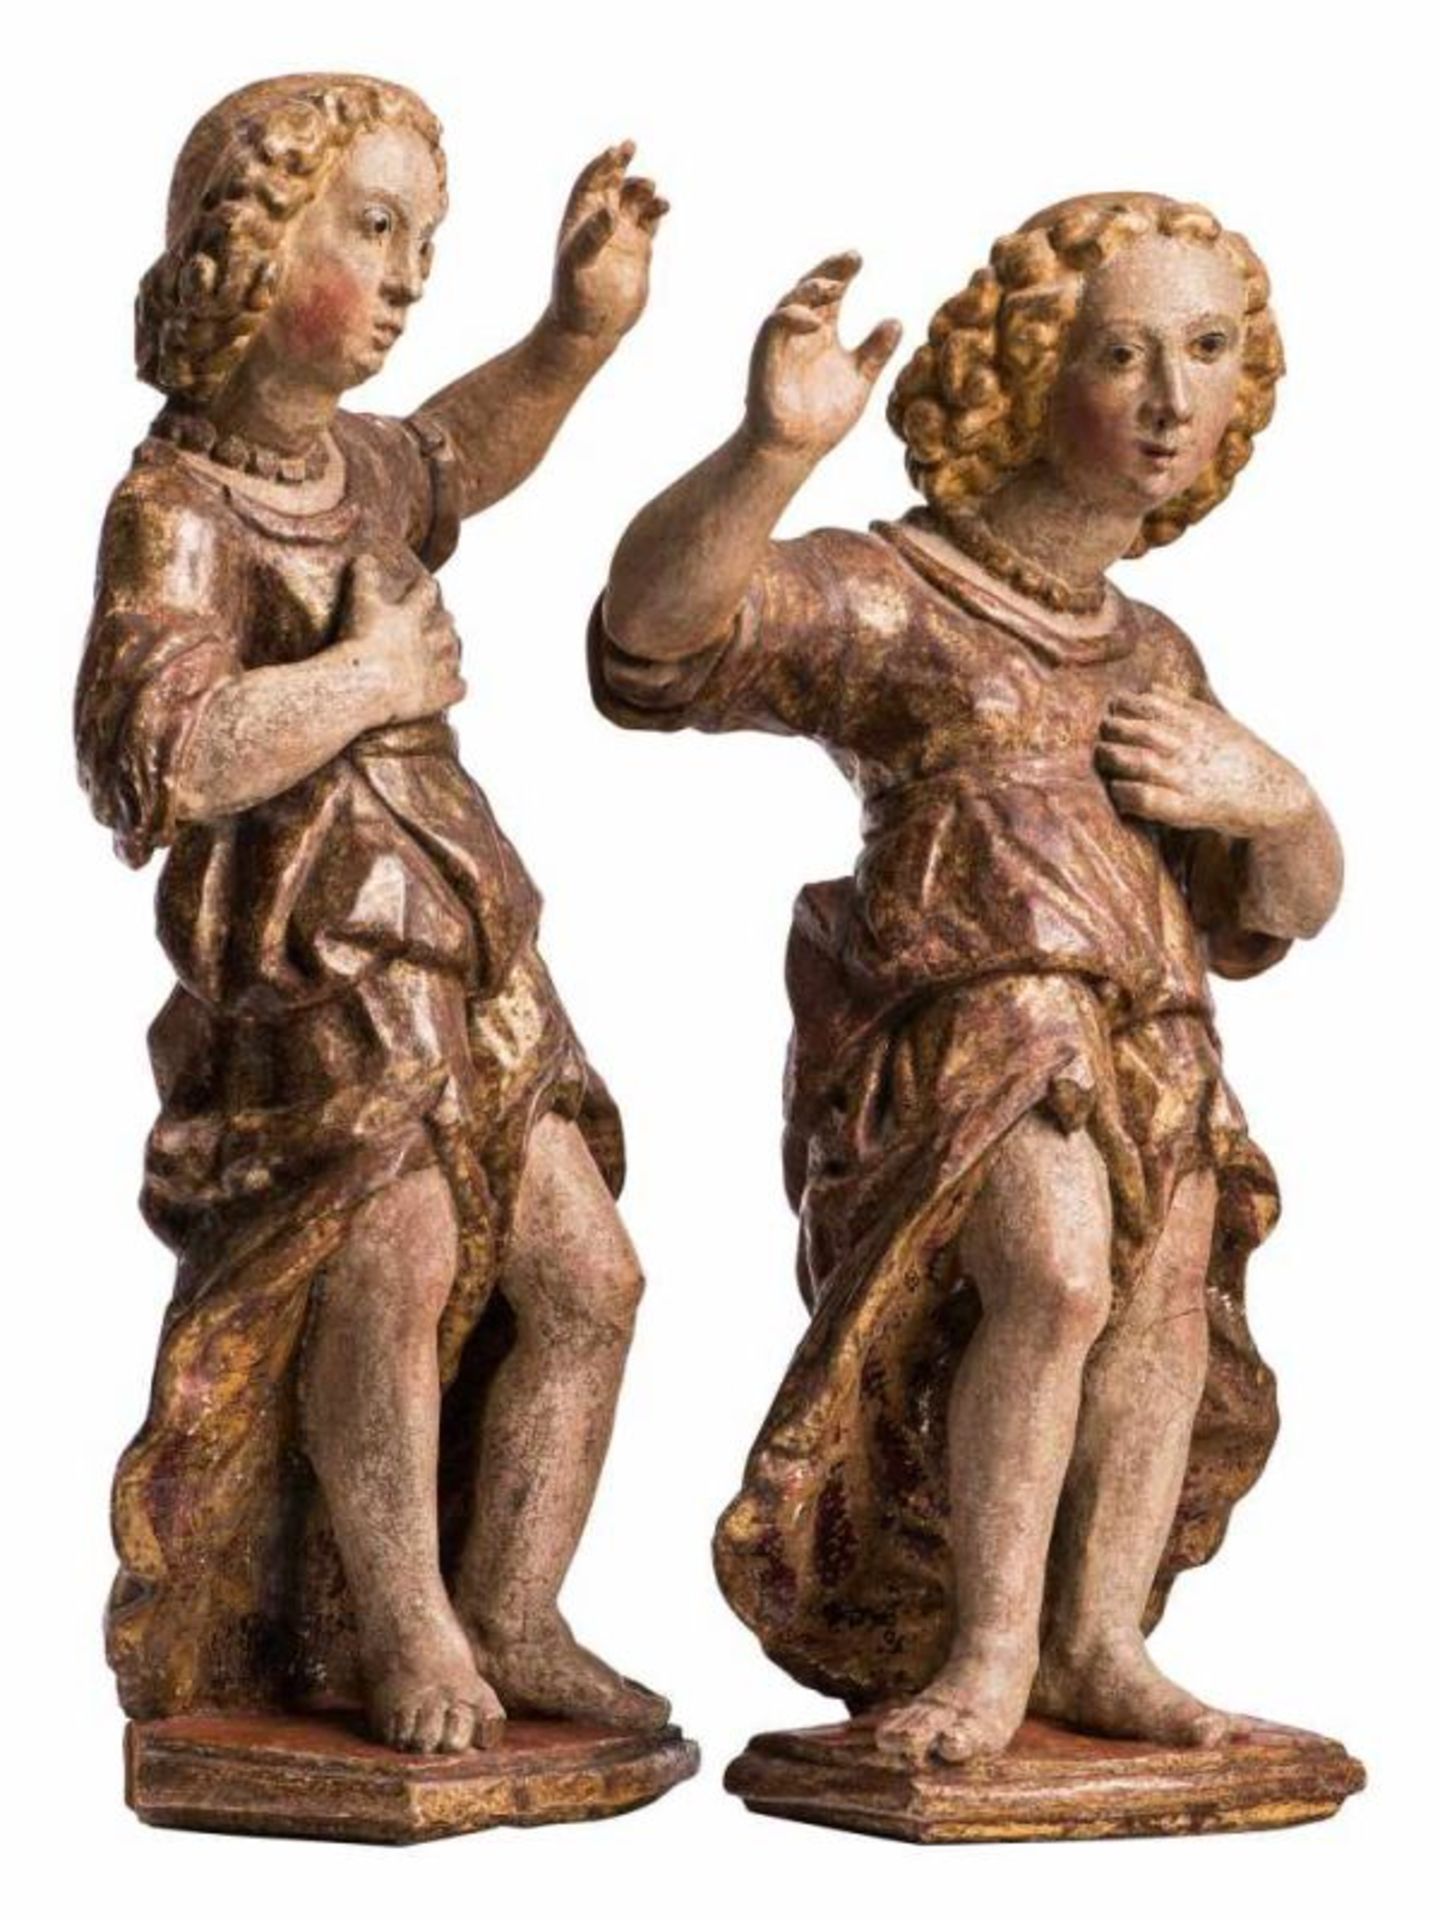 Paar Altarfiguren in goldenem Gewand Wohl Schweiz 18./19. Jh. Holz, vollrund geschnitzt, polychrom - Bild 2 aus 2